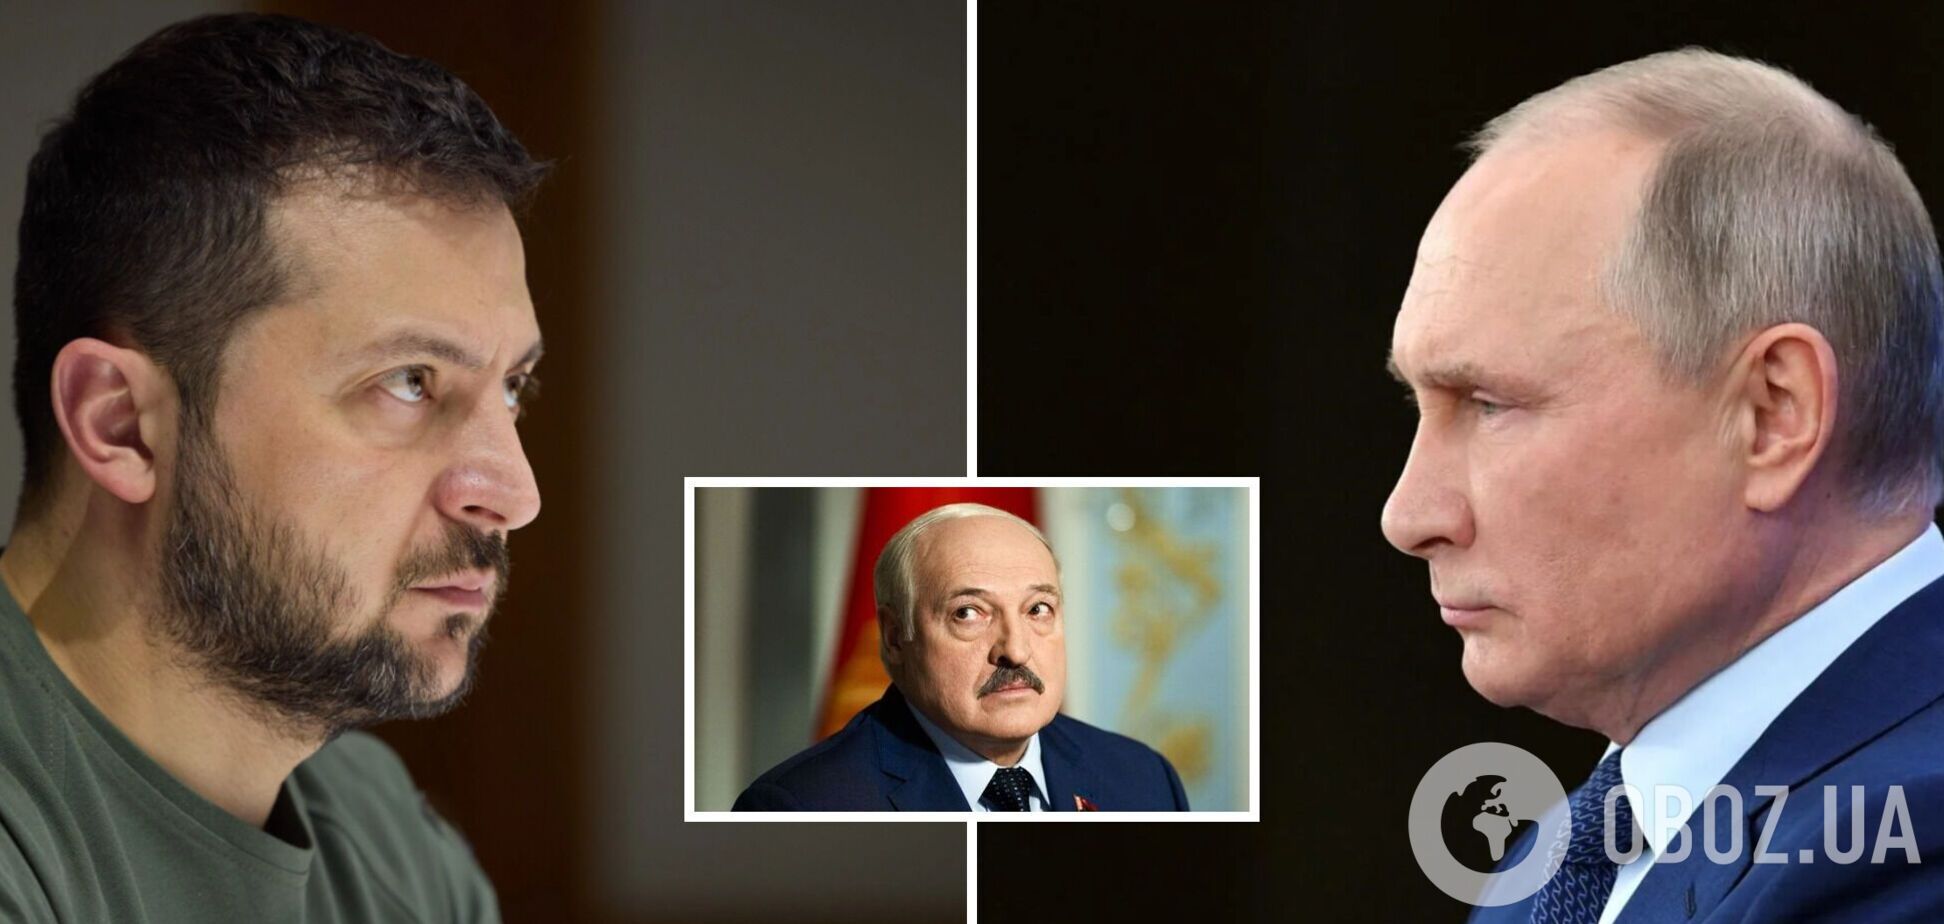 'Ми повинні зупинити це зараз': Лукашенко вдав із себе 'миротворця' і закликав Україну до переговорів з РФ 'без умов'